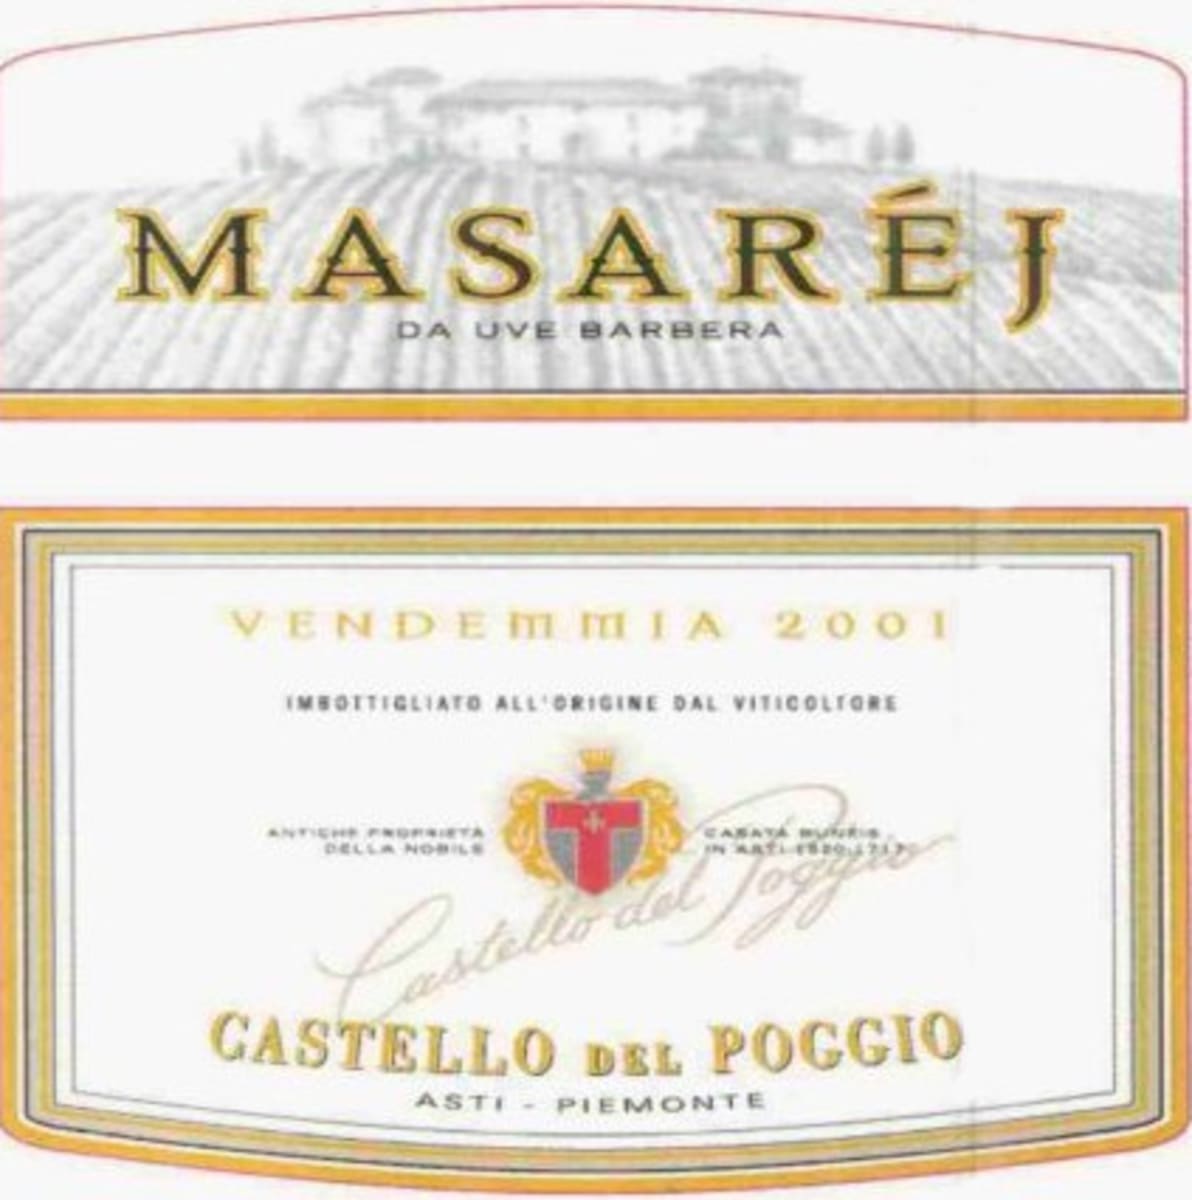 Castello del Poggio Masarej 2001 Front Label